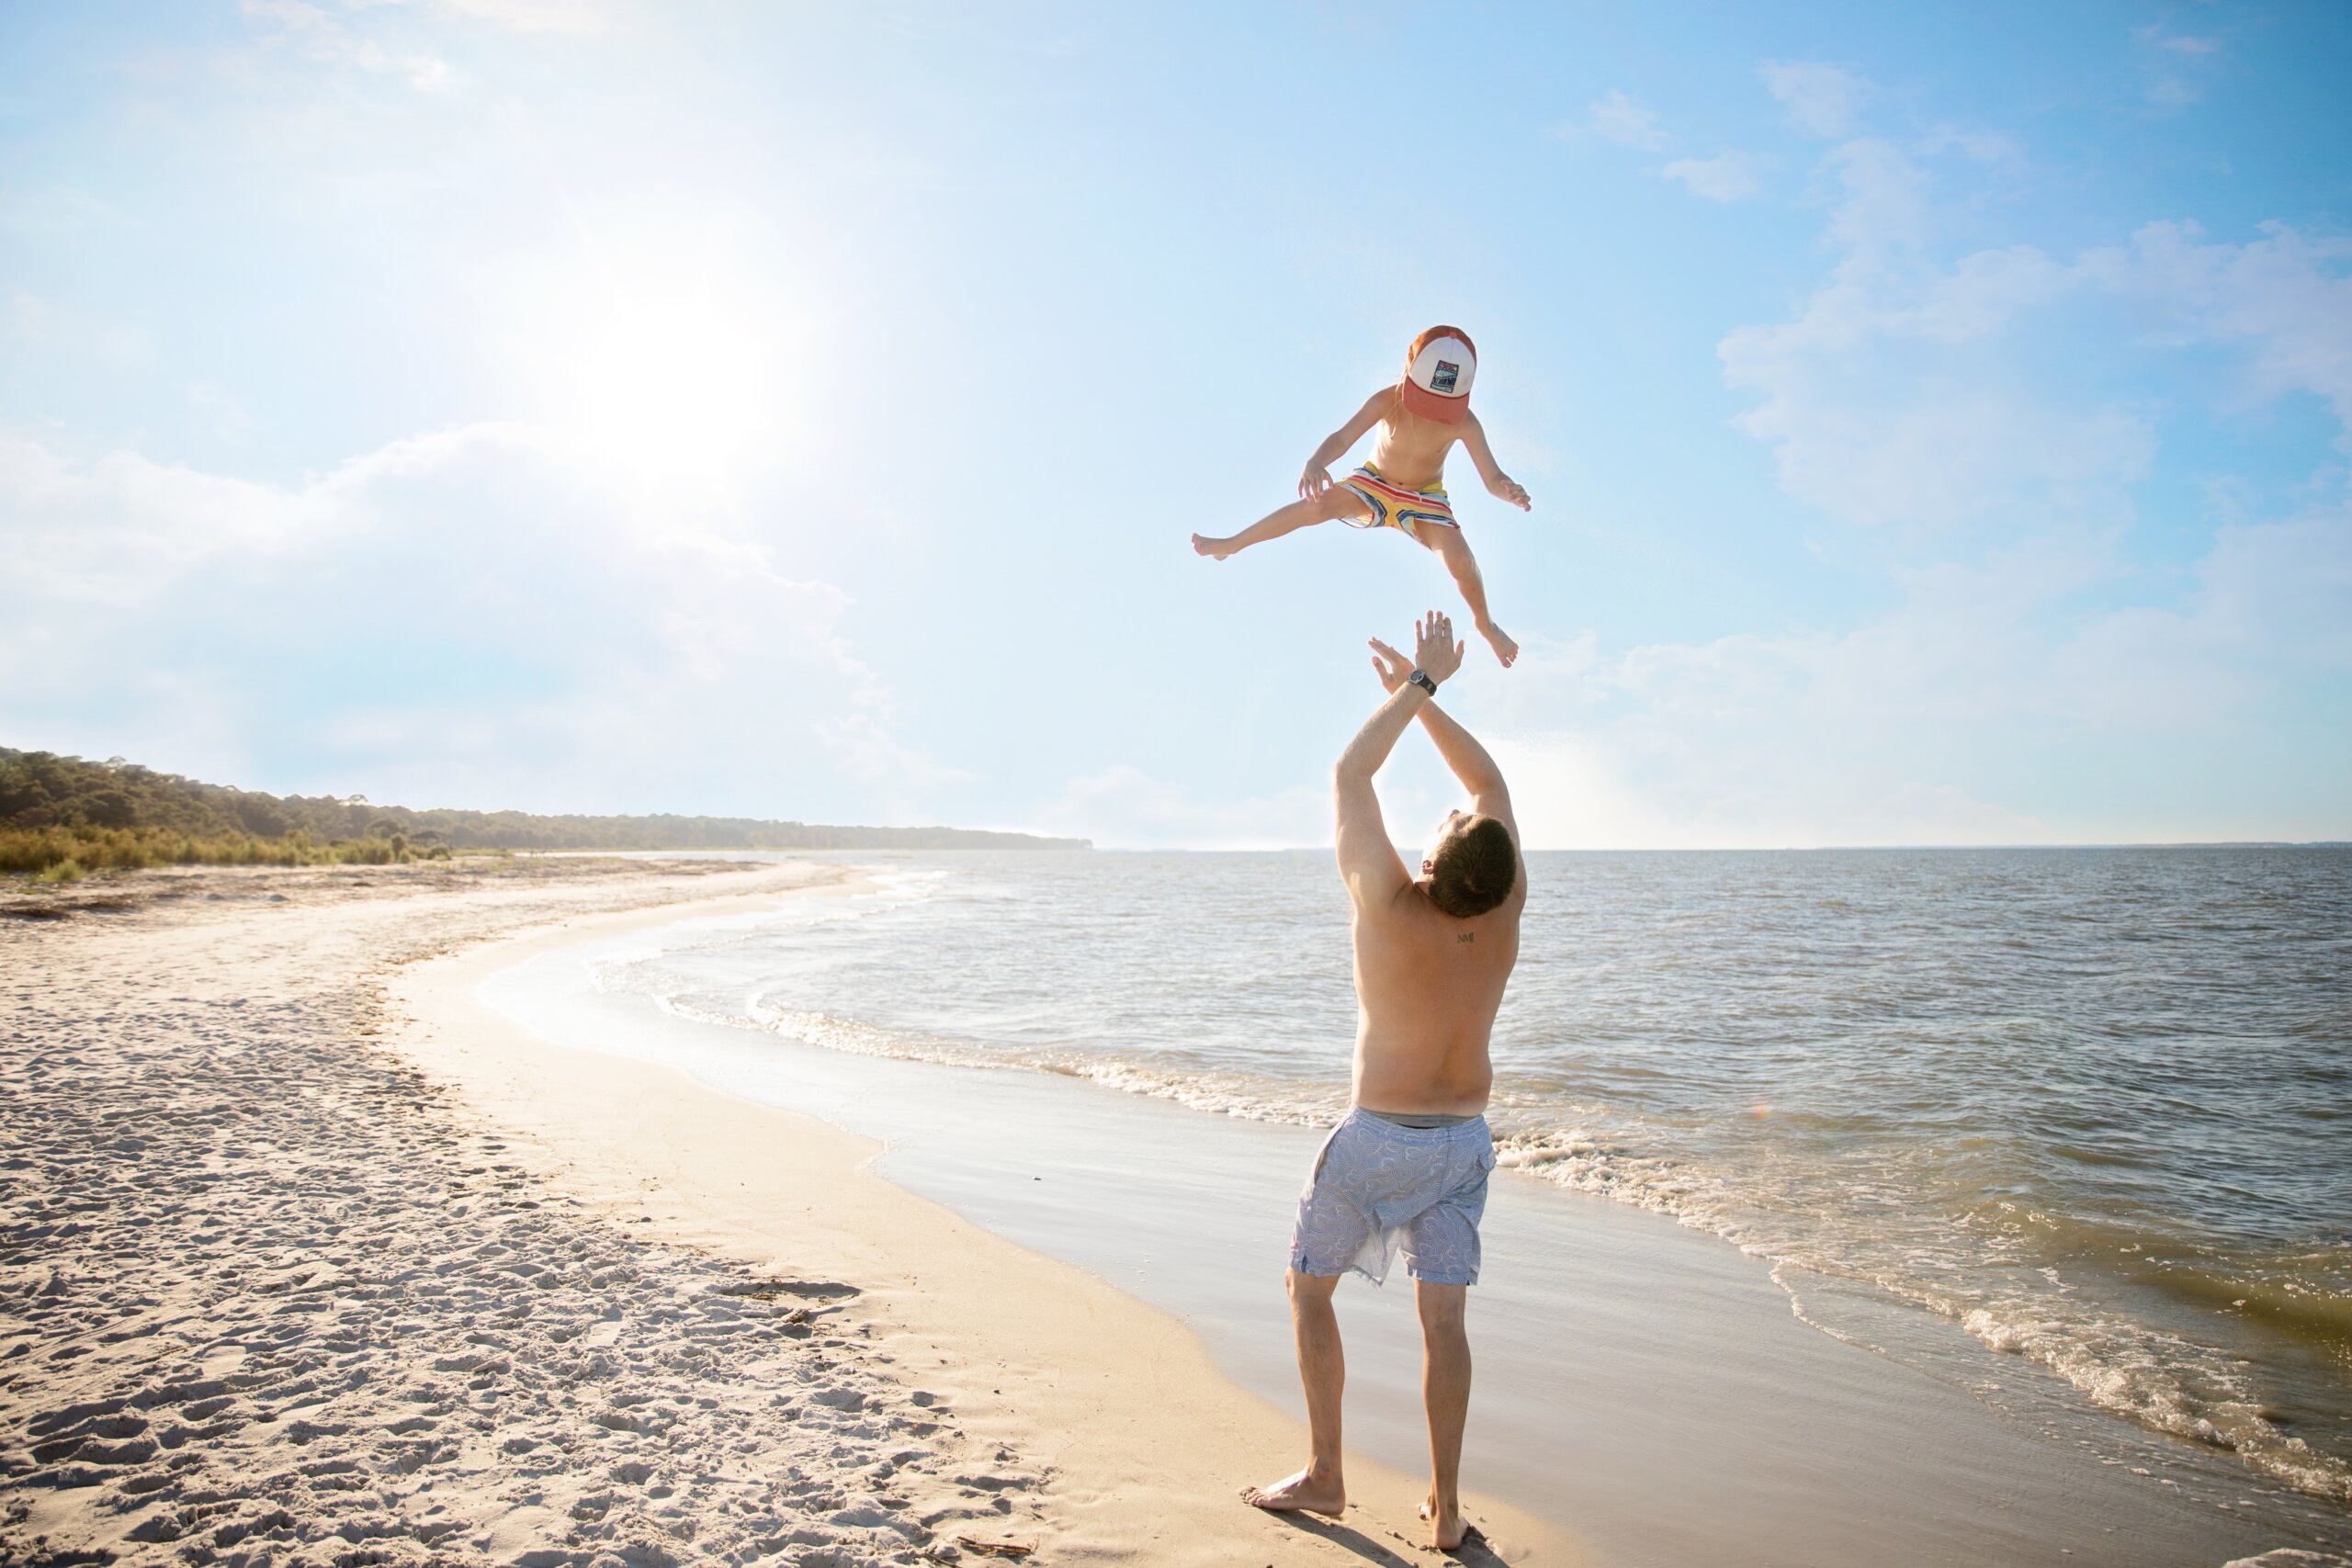 Man throwing child in air near beach